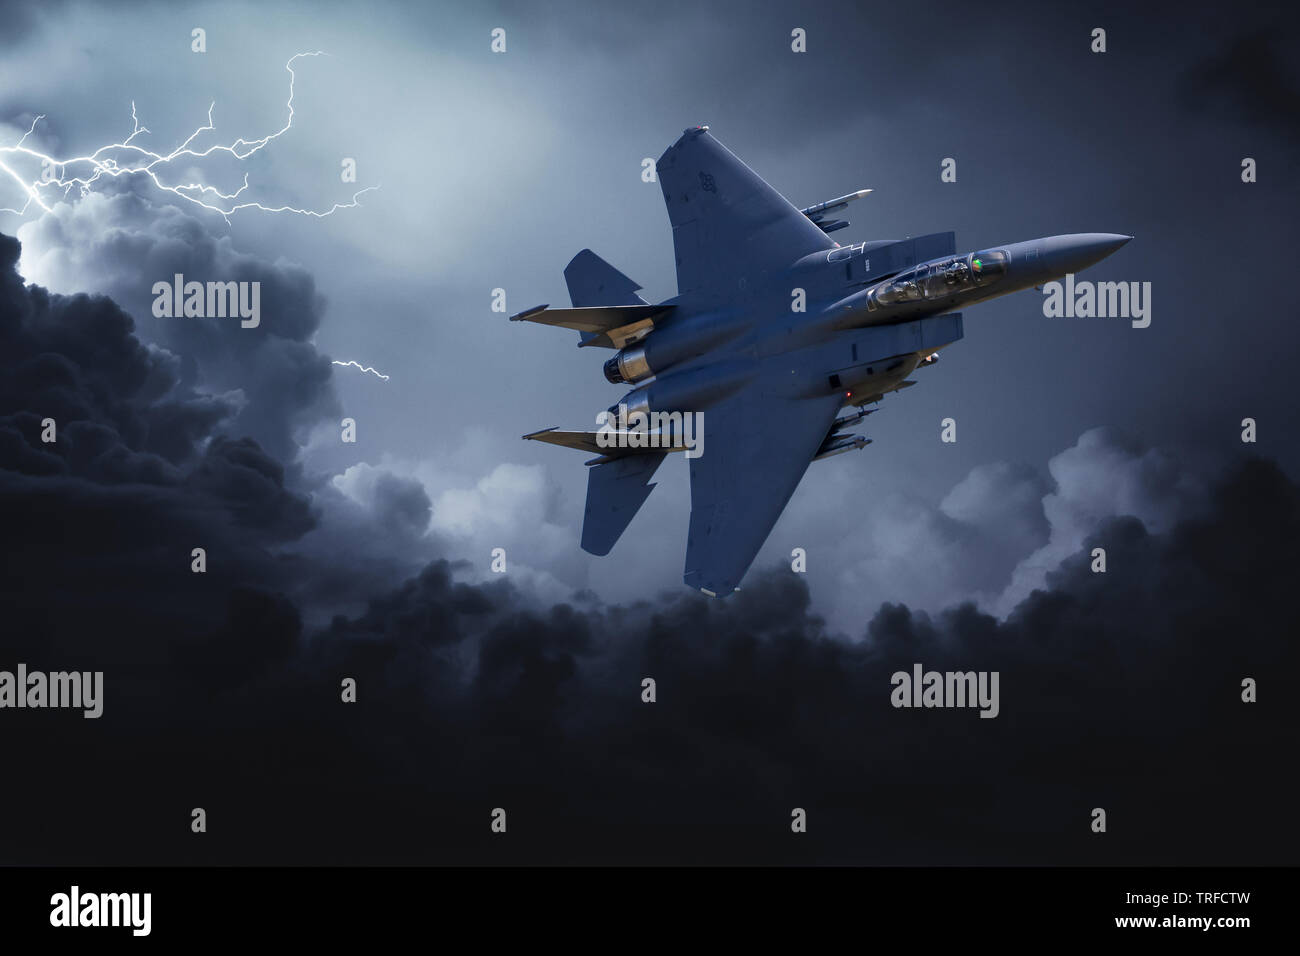 F-15 Strike Eagle. Une image composite d'un F-15 de l'USAF volant dans un ciel orageux. Banque D'Images